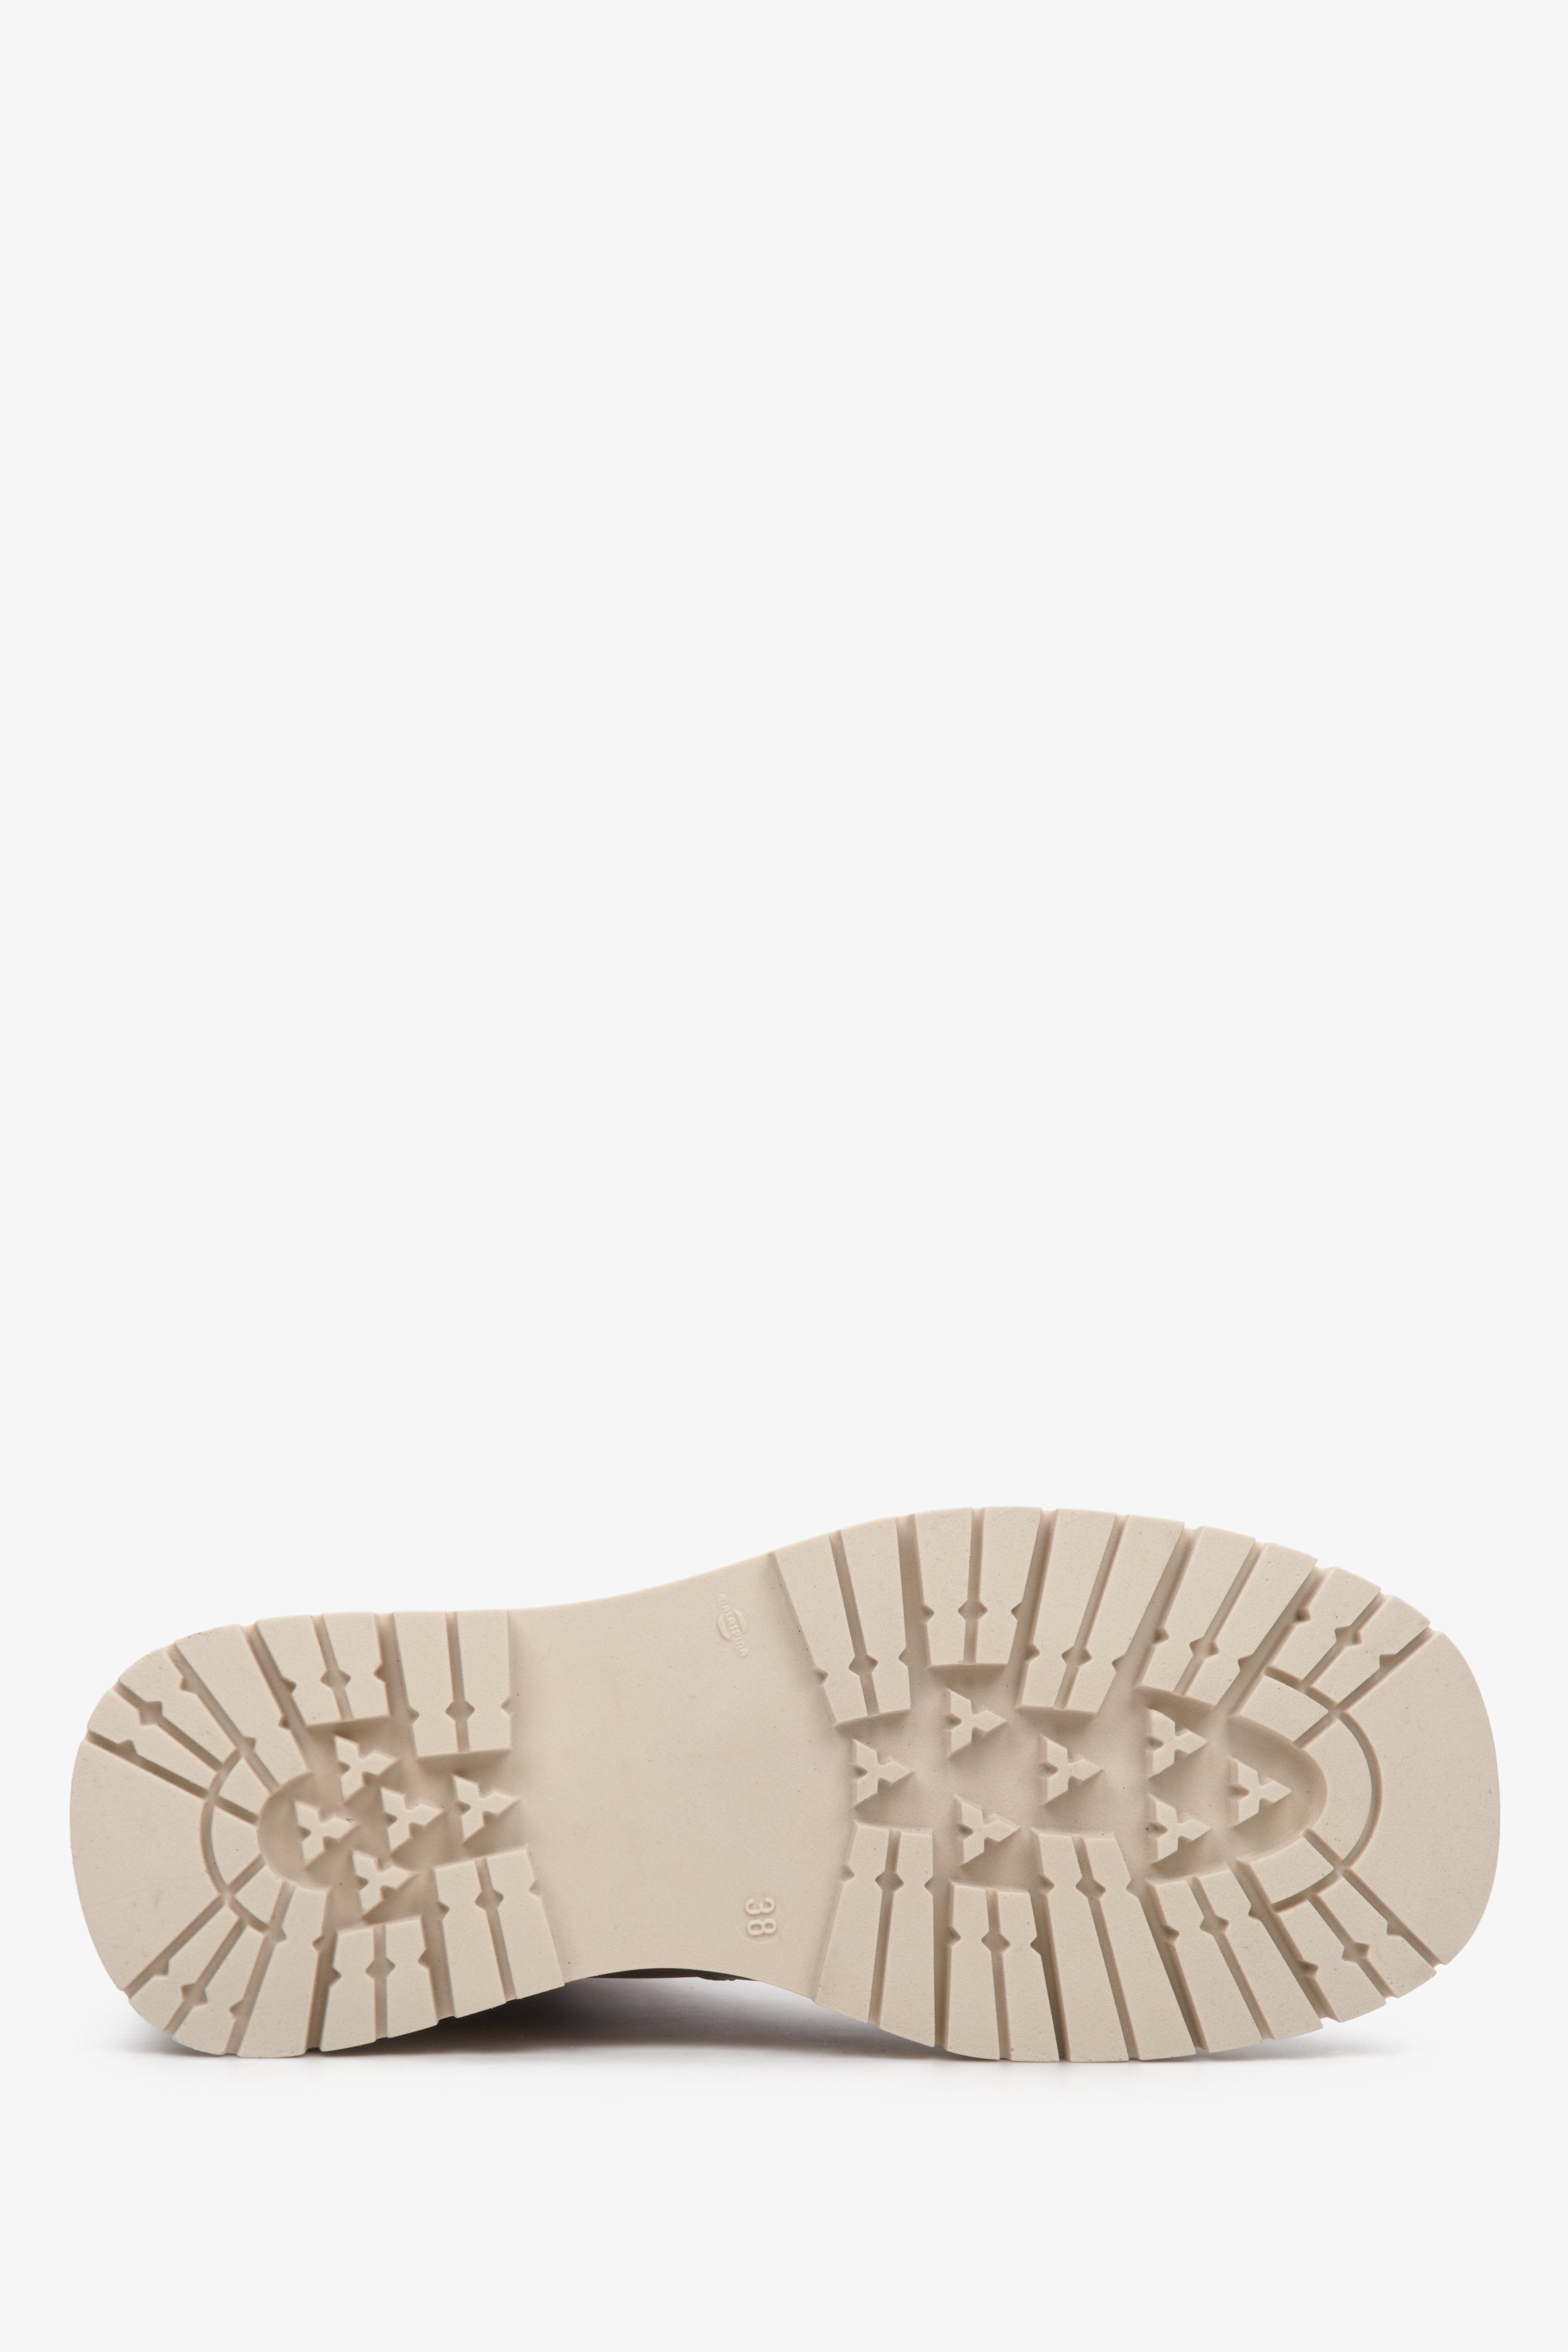 Wysokie, jesienne botki damskie ze skóry naturalnej w kolorze brązowym marki Estro - zbliżenie na podeszwę buta.